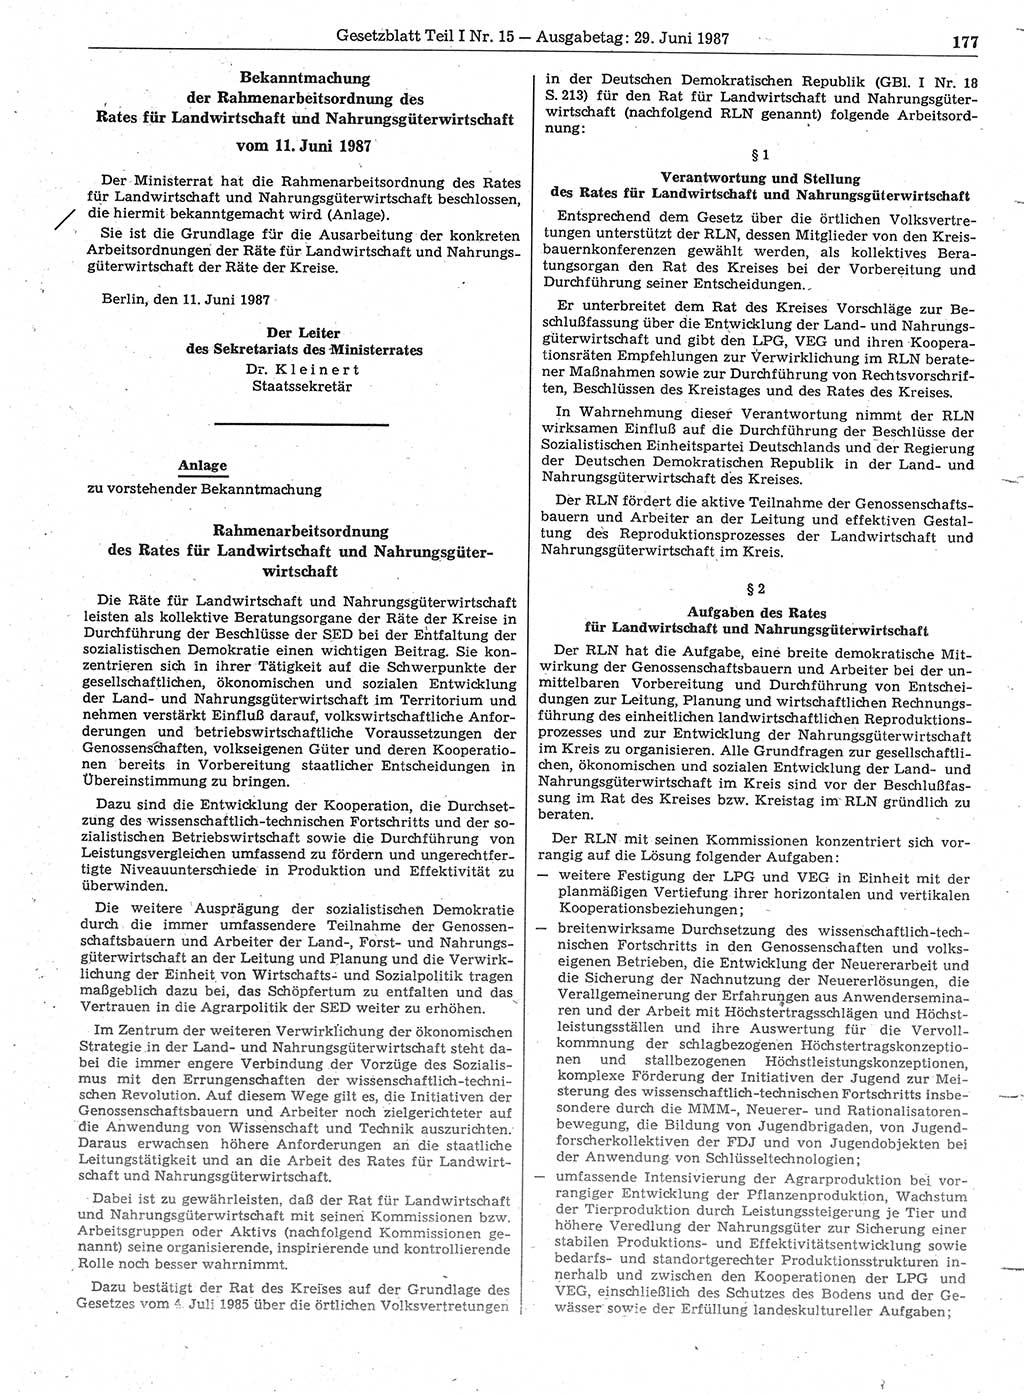 Gesetzblatt (GBl.) der Deutschen Demokratischen Republik (DDR) Teil Ⅰ 1987, Seite 177 (GBl. DDR Ⅰ 1987, S. 177)